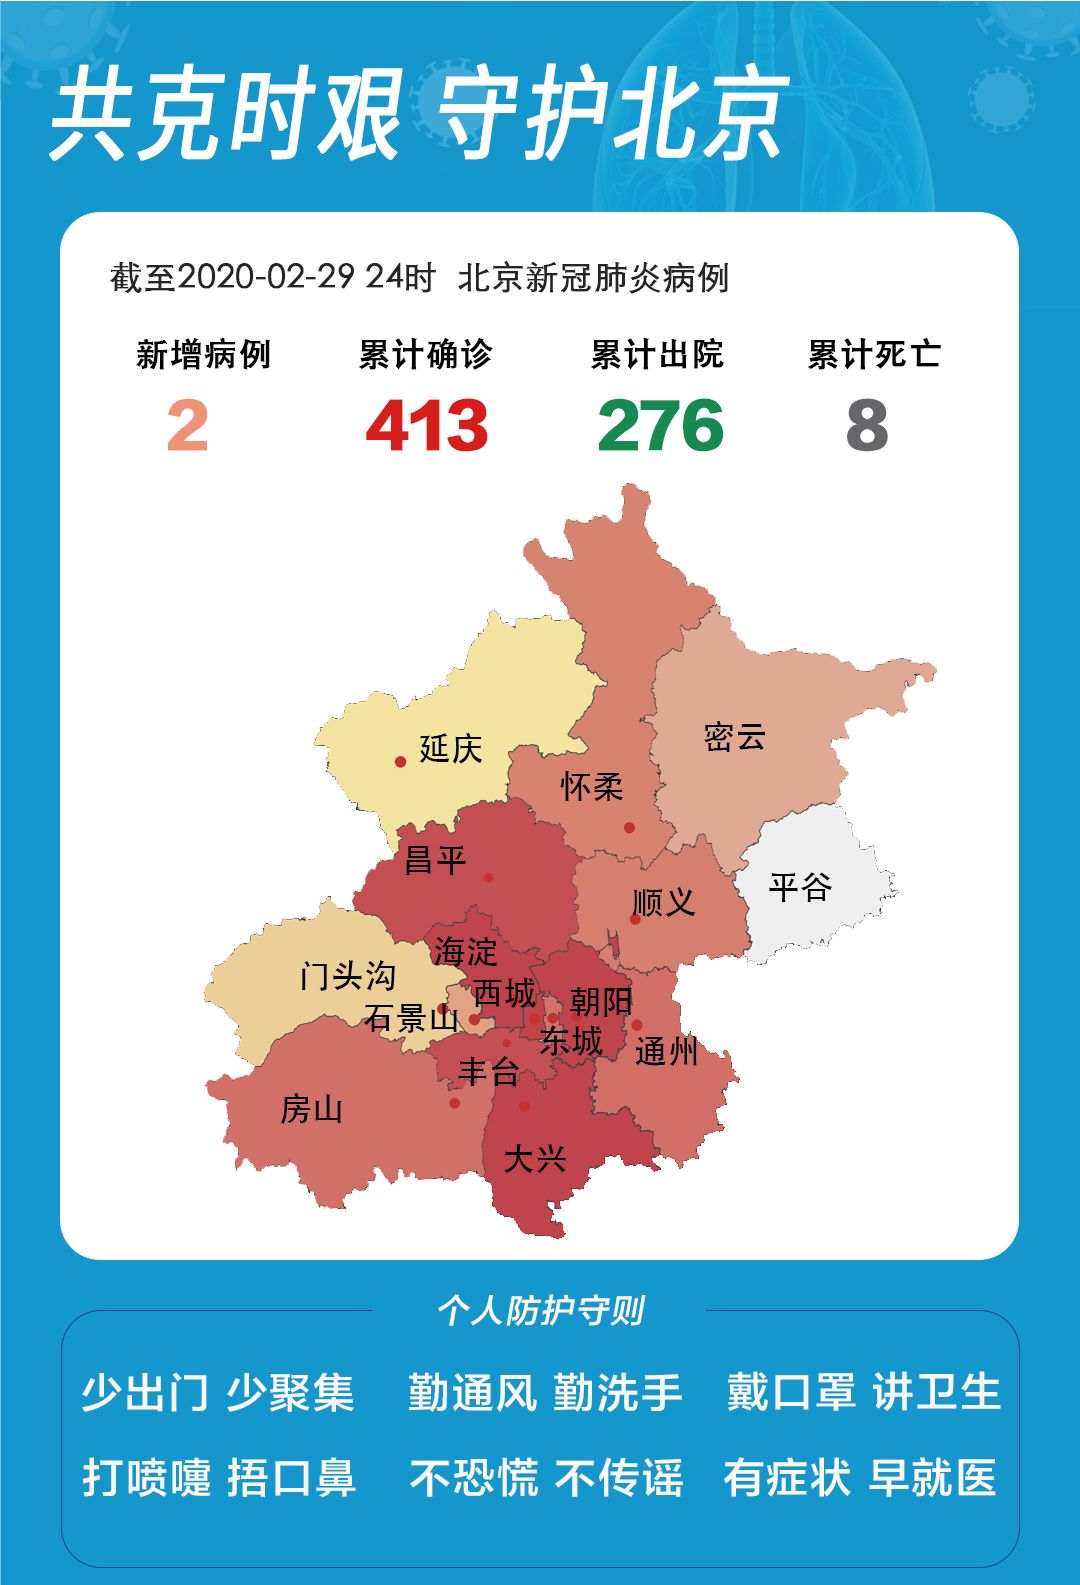 朝阳无新增北京儿童医院确诊的1例新冠肺炎患儿详细信息来了